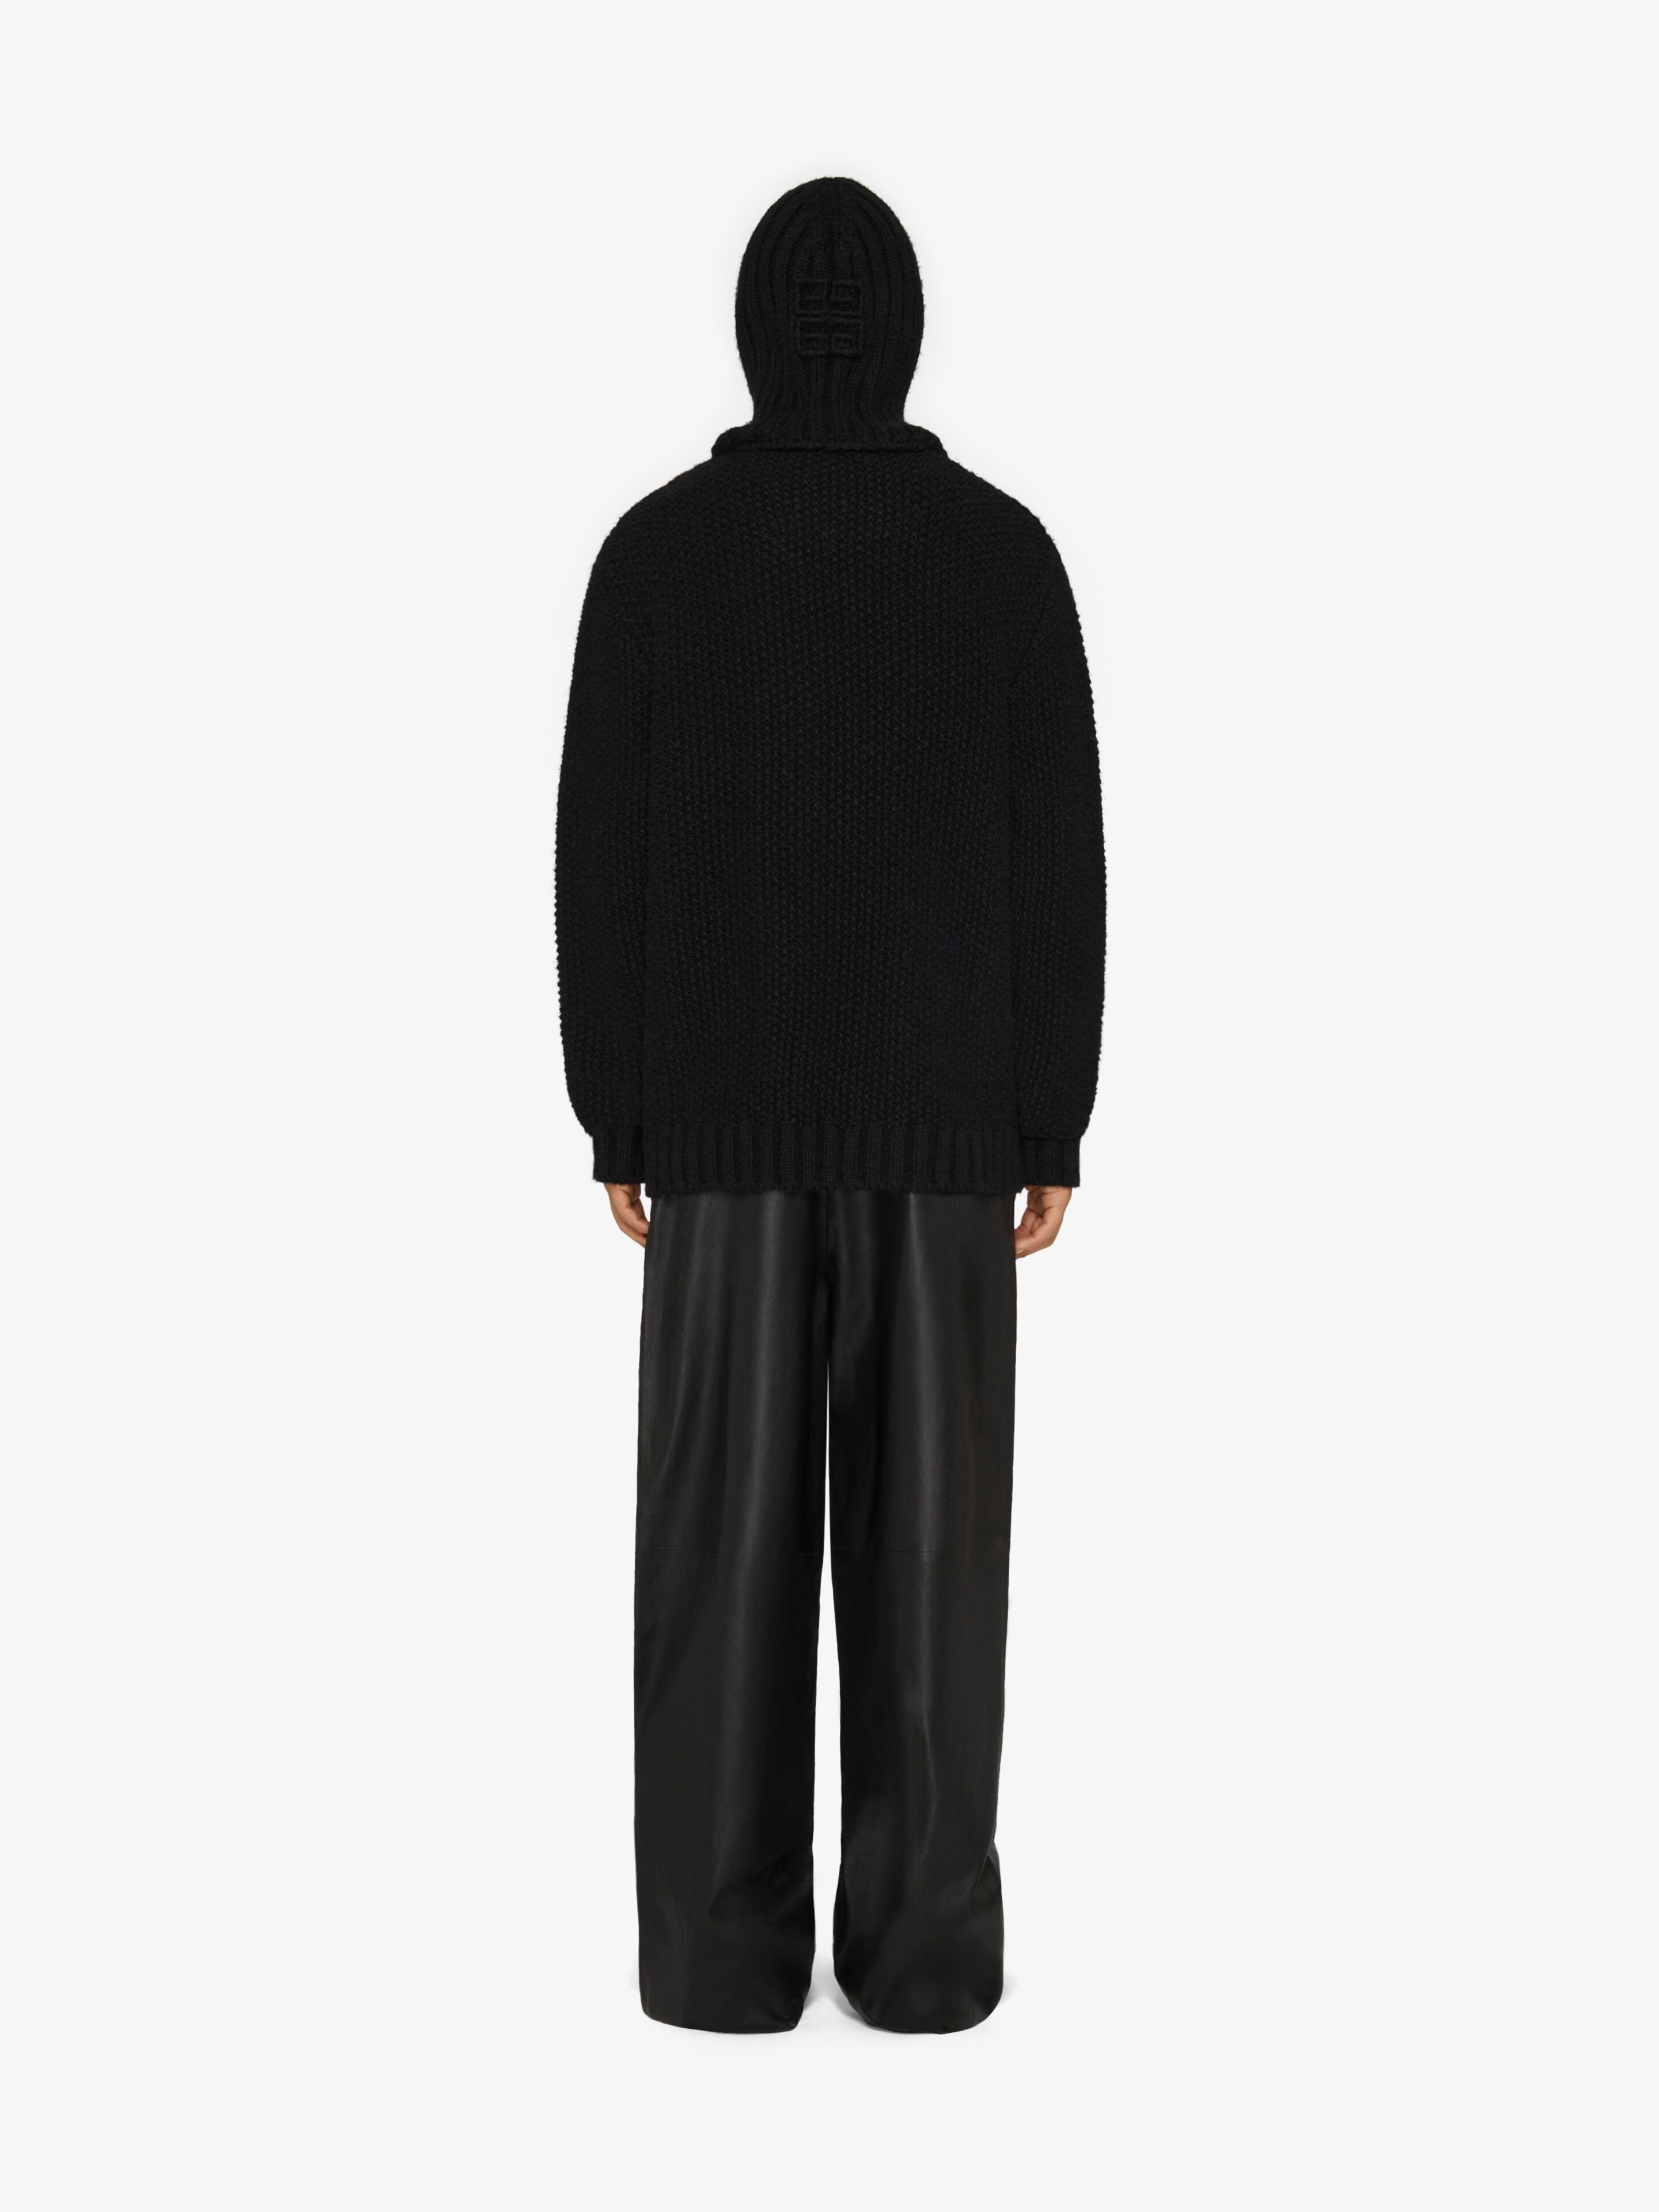 Givenchy Black Balaclava Sweater